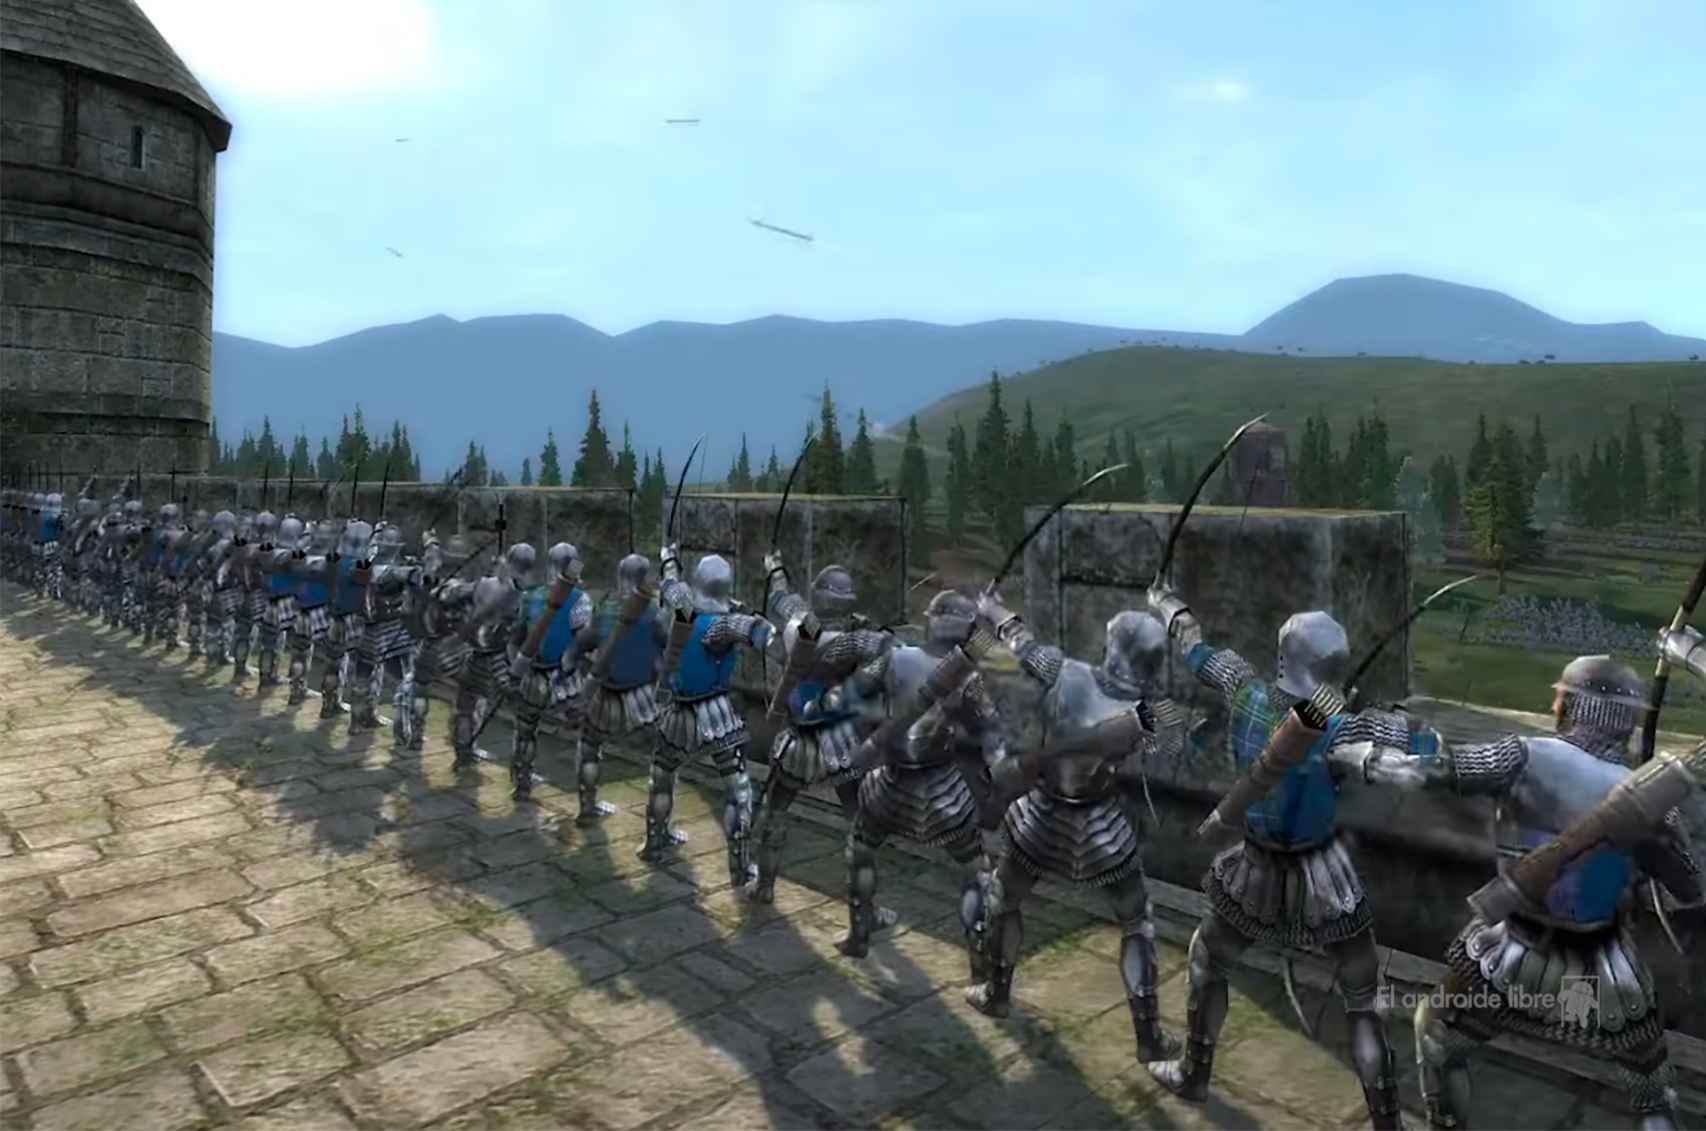 Total War: Medieval II